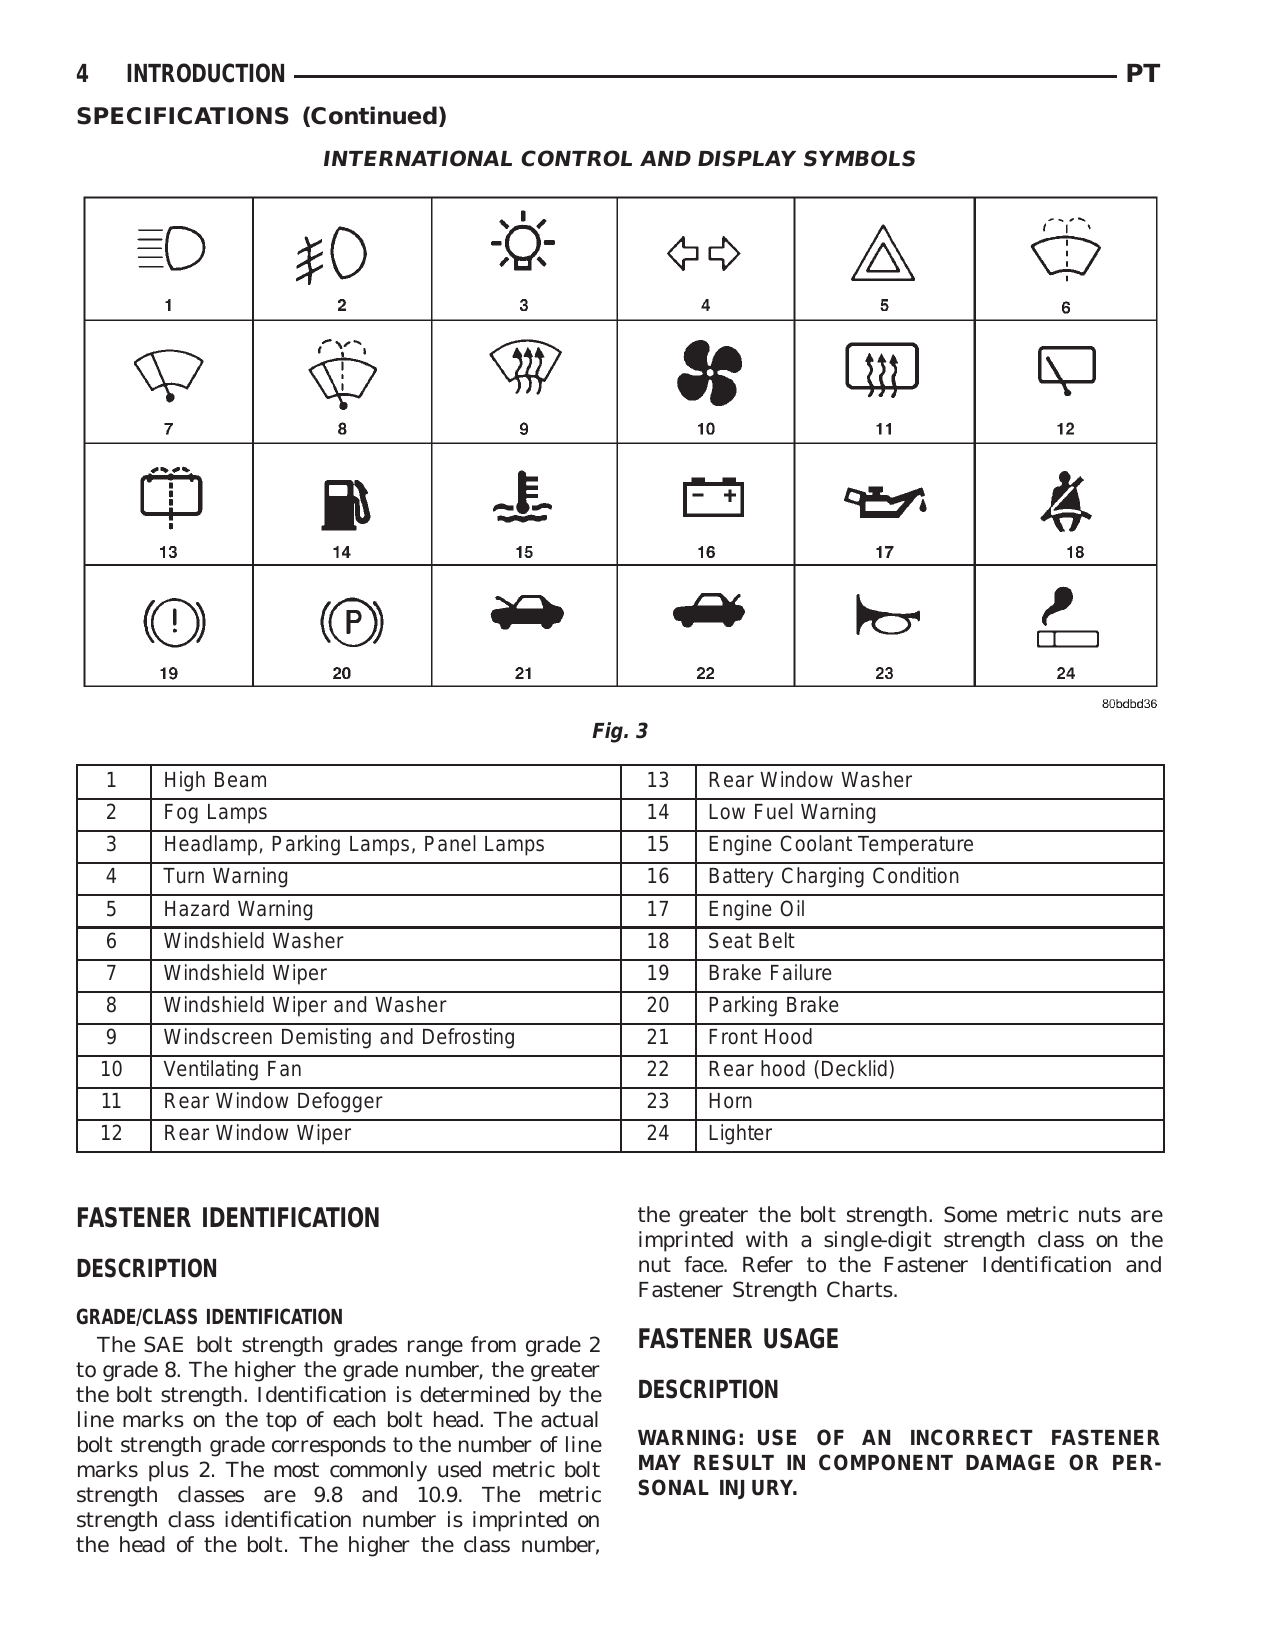 2001 PT Cruiser repair manual Preview image 5